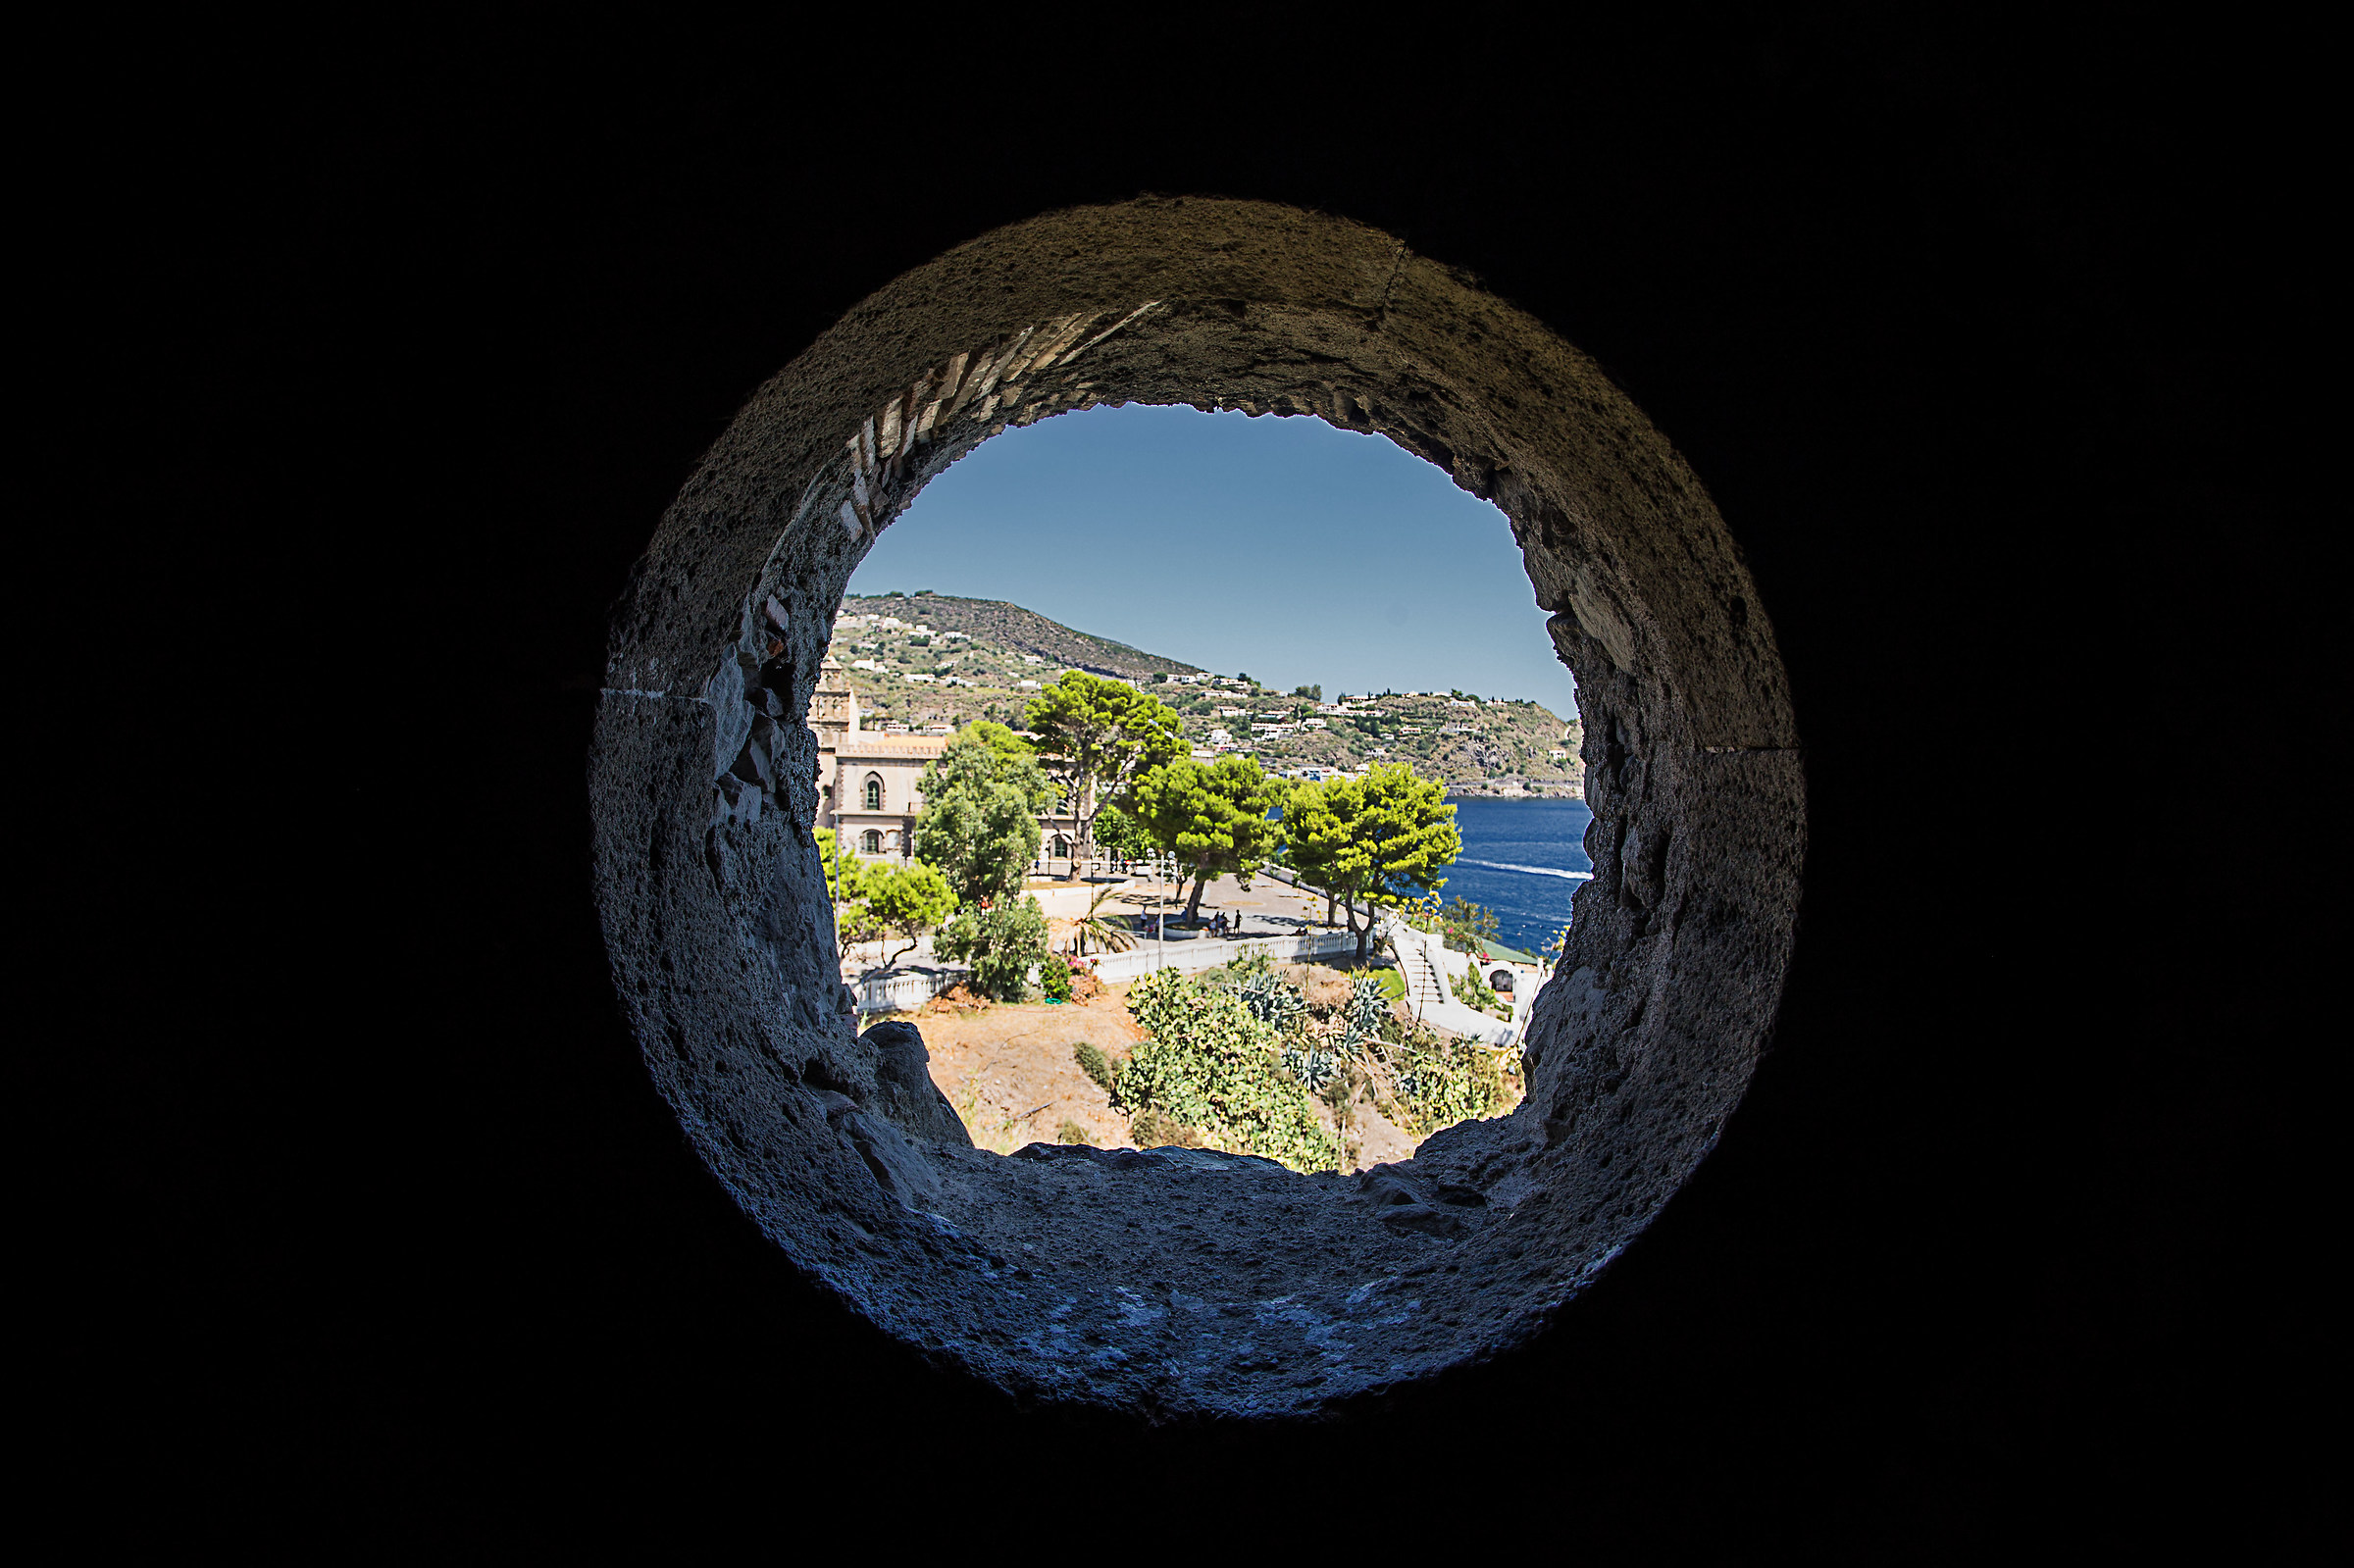 Through the stone porthole...